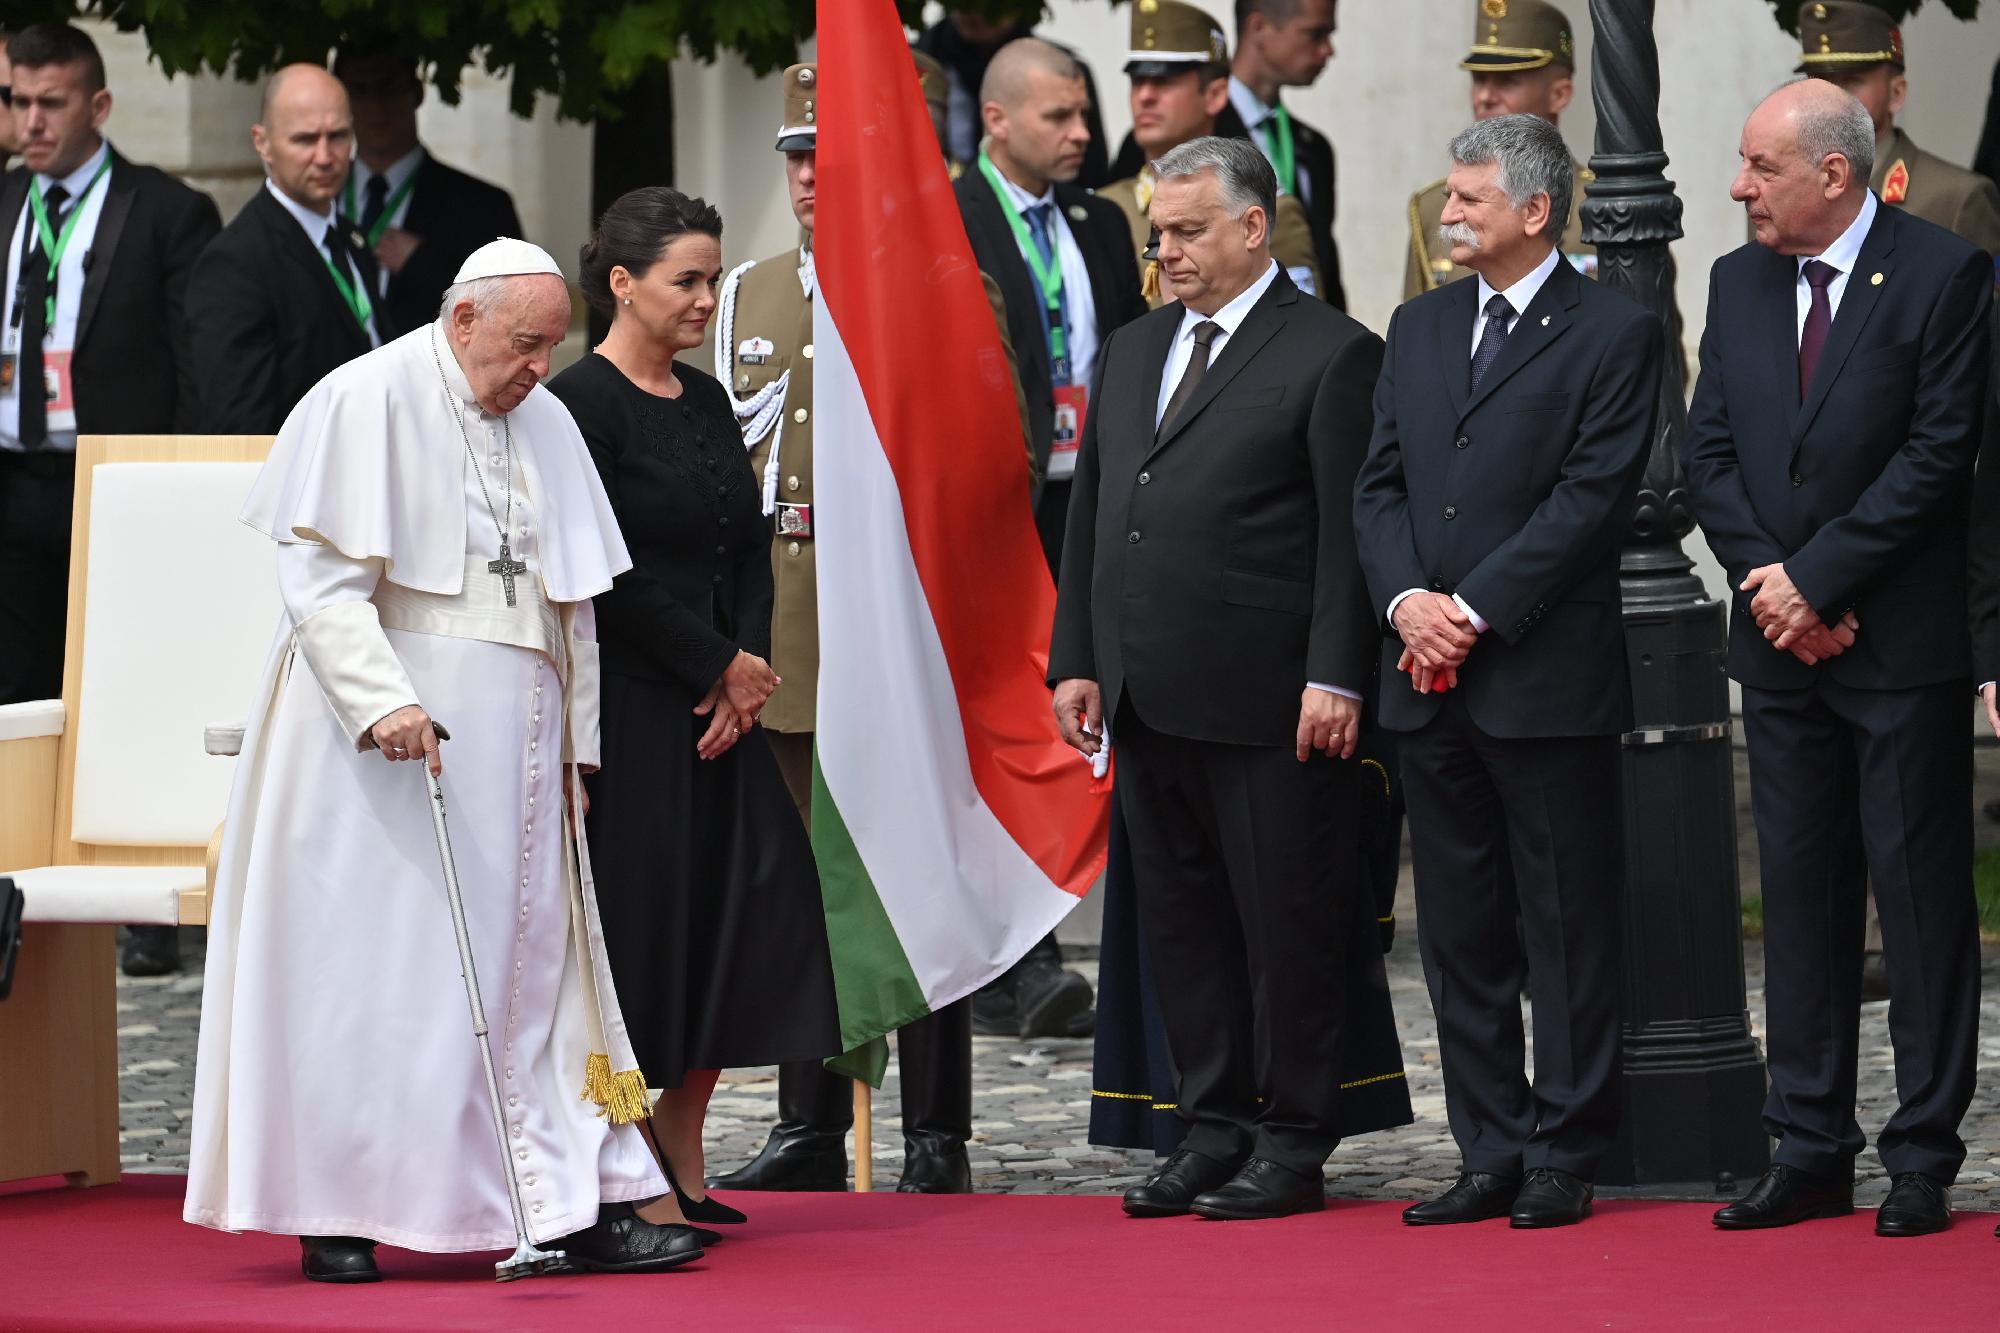 Pápalátogatás - Ferenc pápa fogadása a Szent György téren